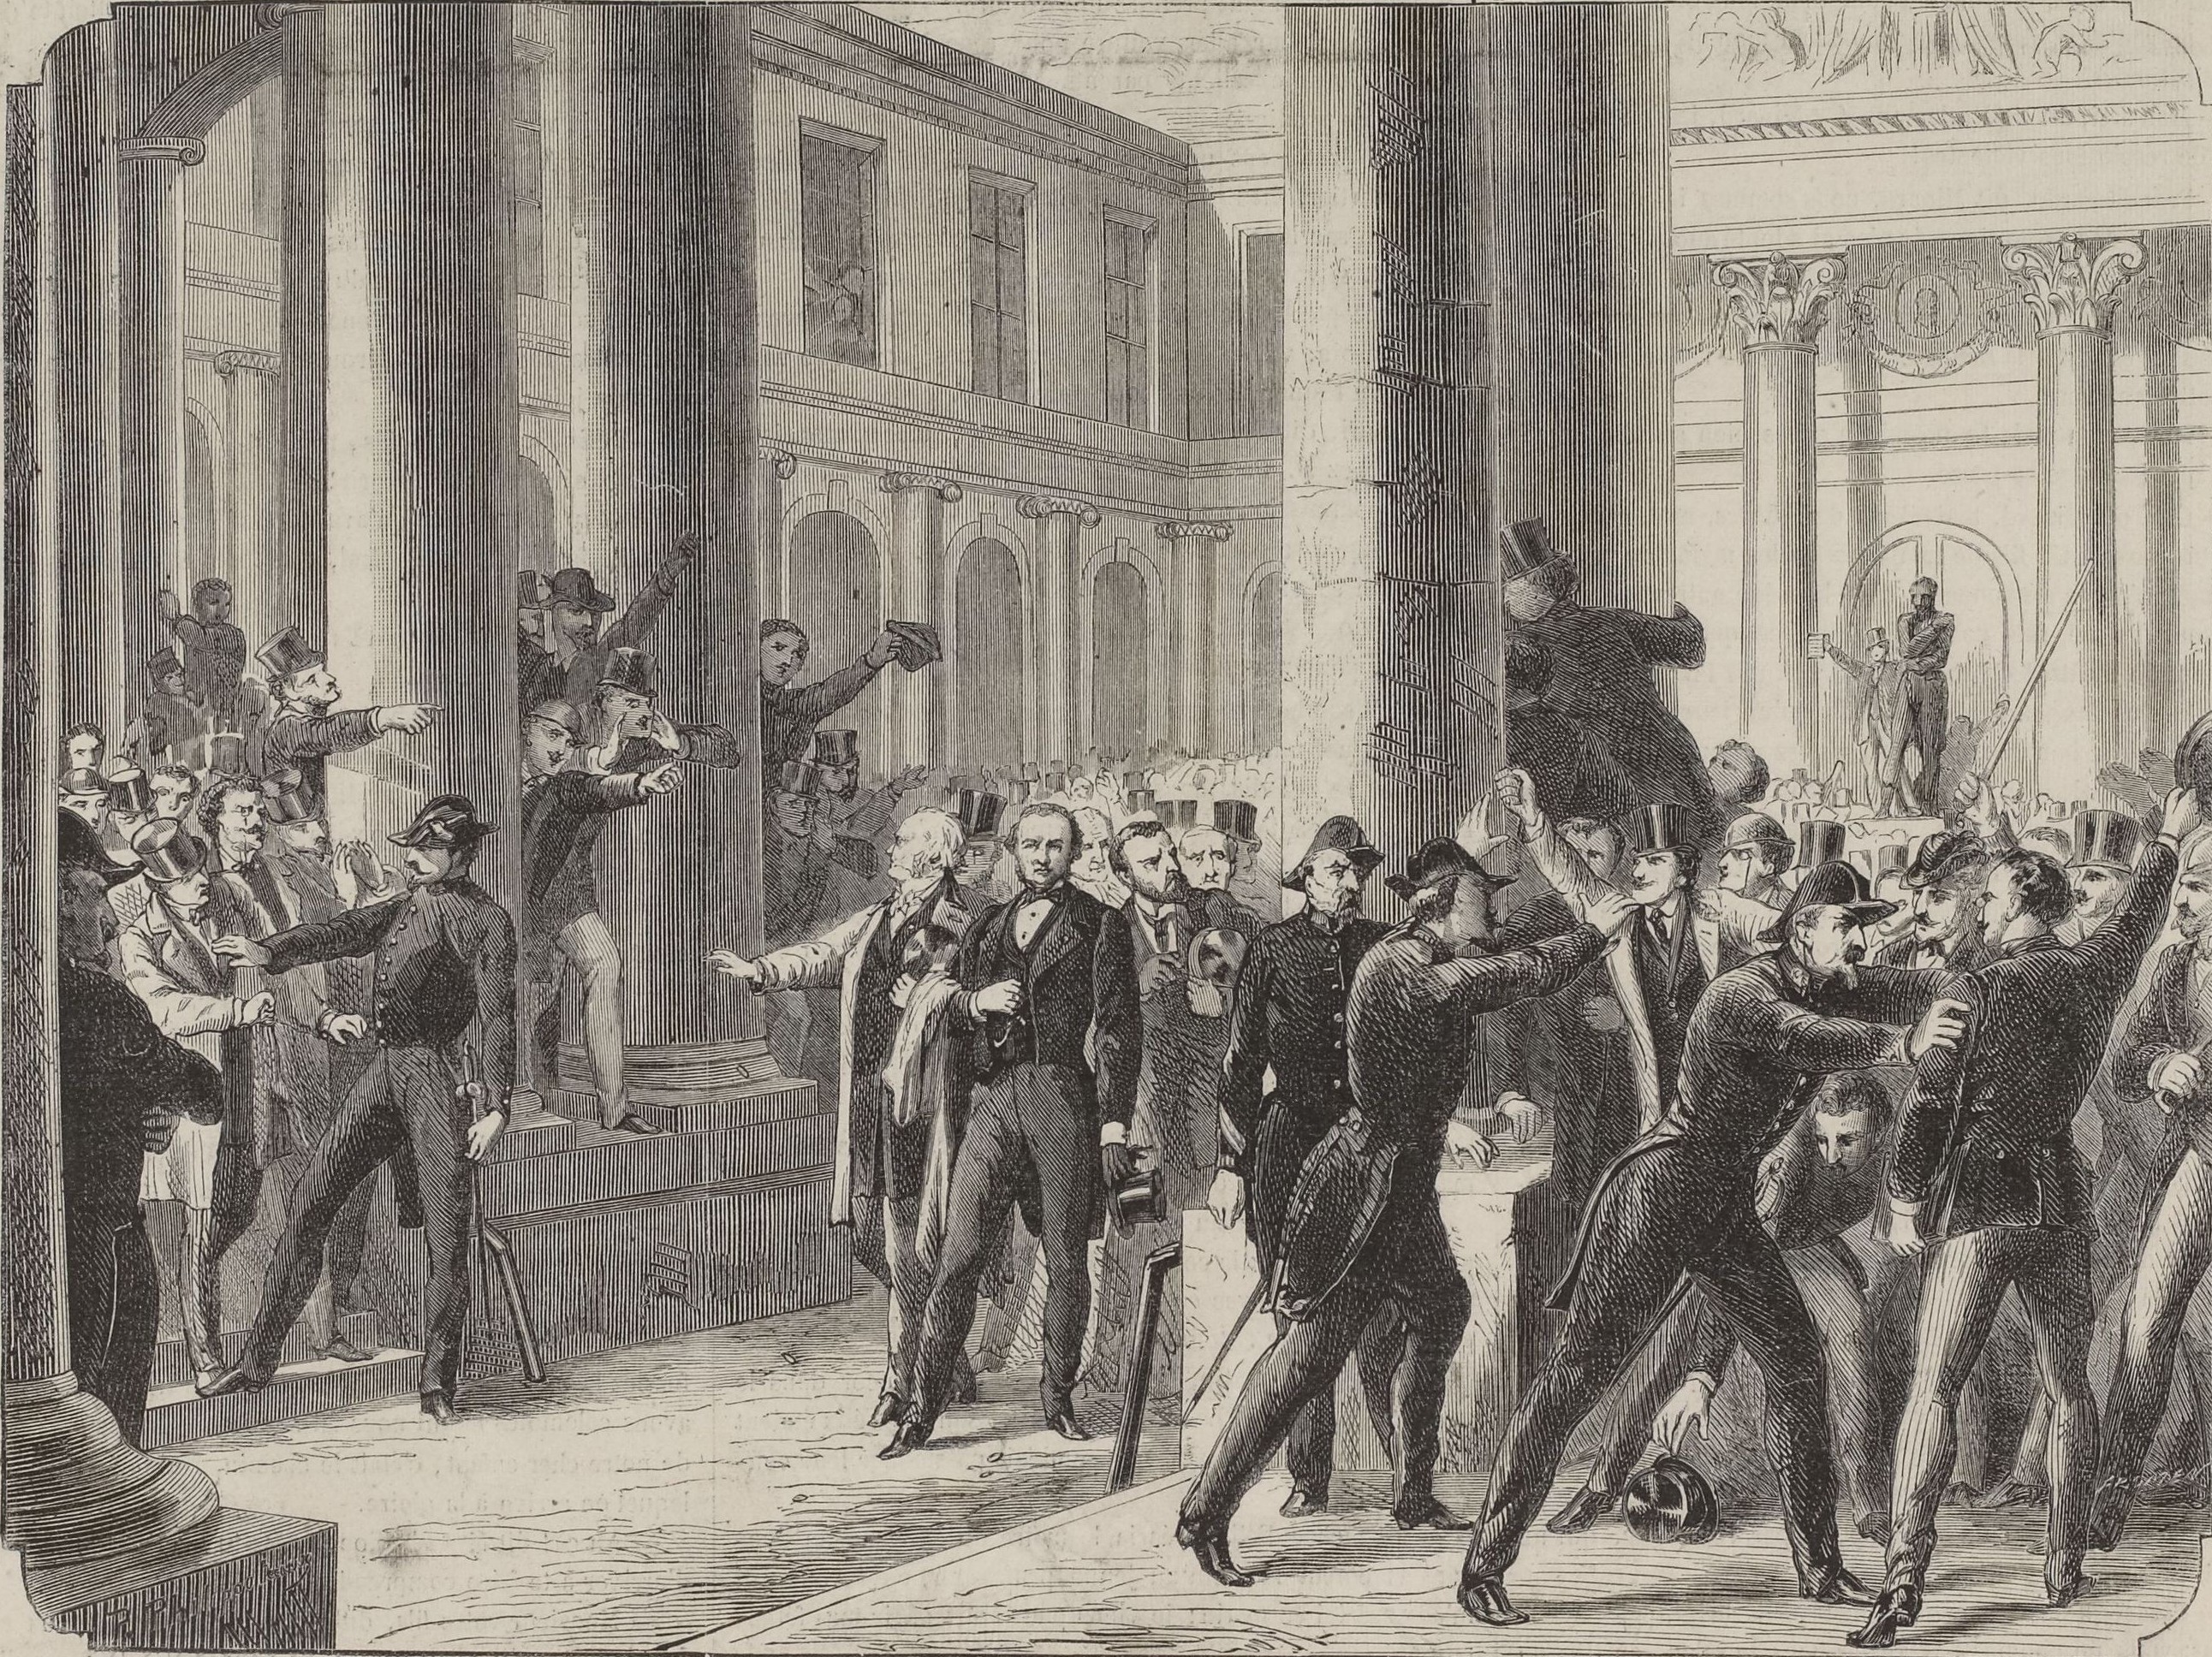 Manifestation des étudiants en médecine au cours de M. Tardieu. Gravure de Philippoteaux, 1870 (Musée Carnavalet)